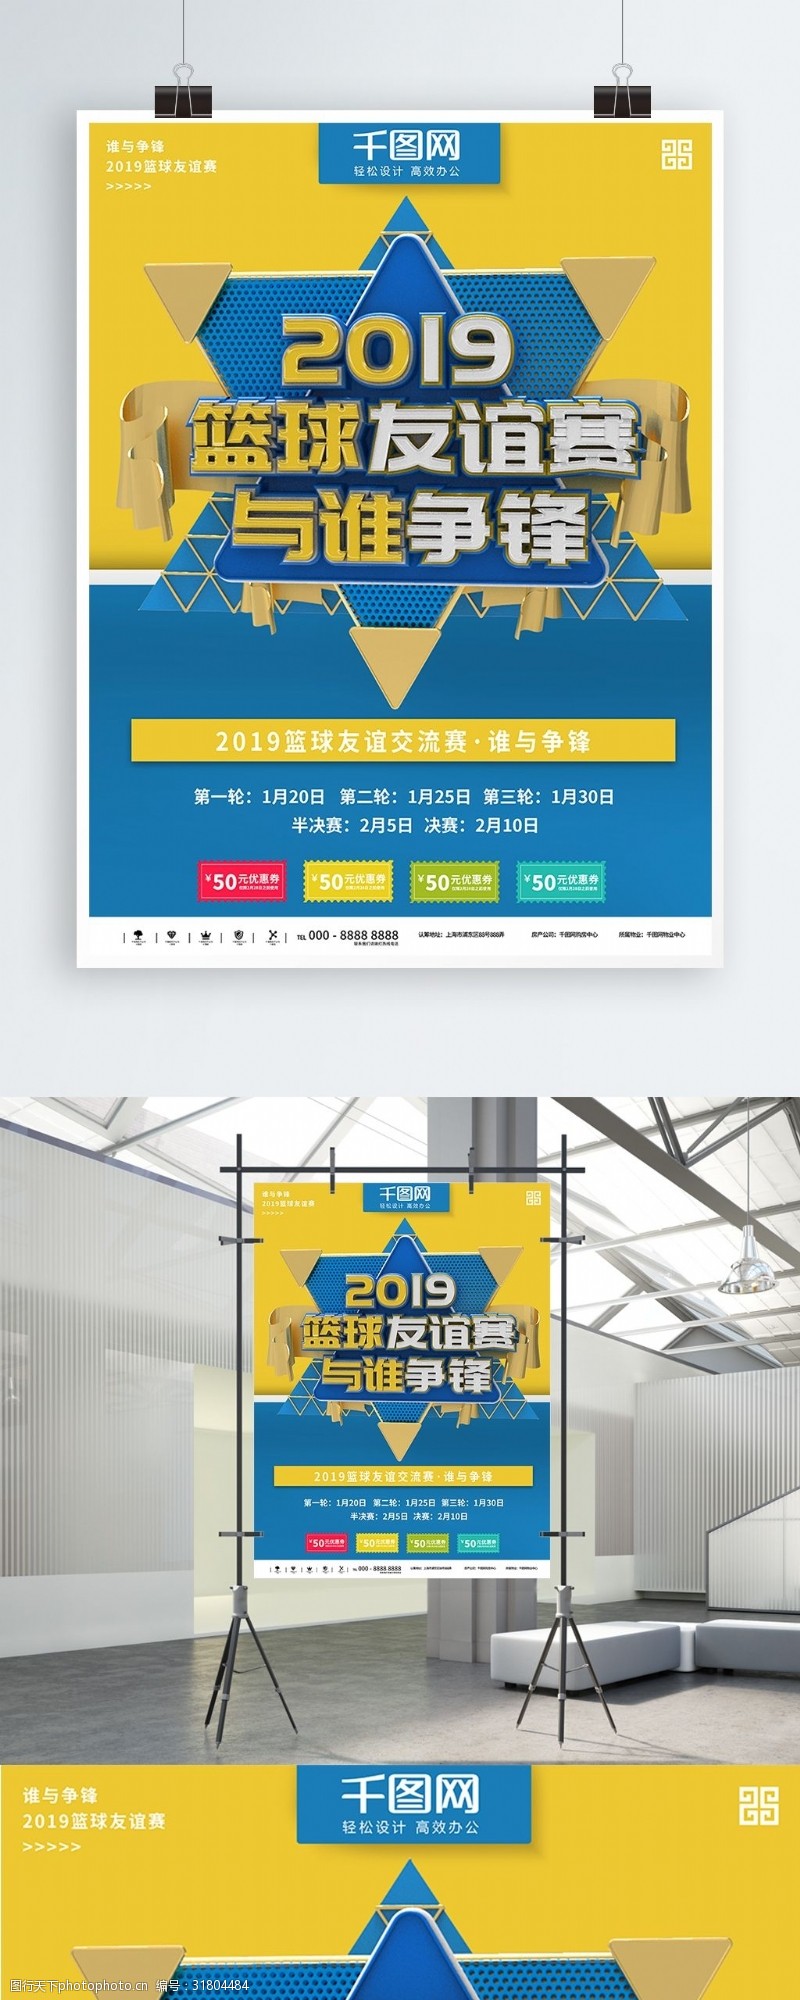 黄蓝大气立体篮球友谊赛商业宣传海报